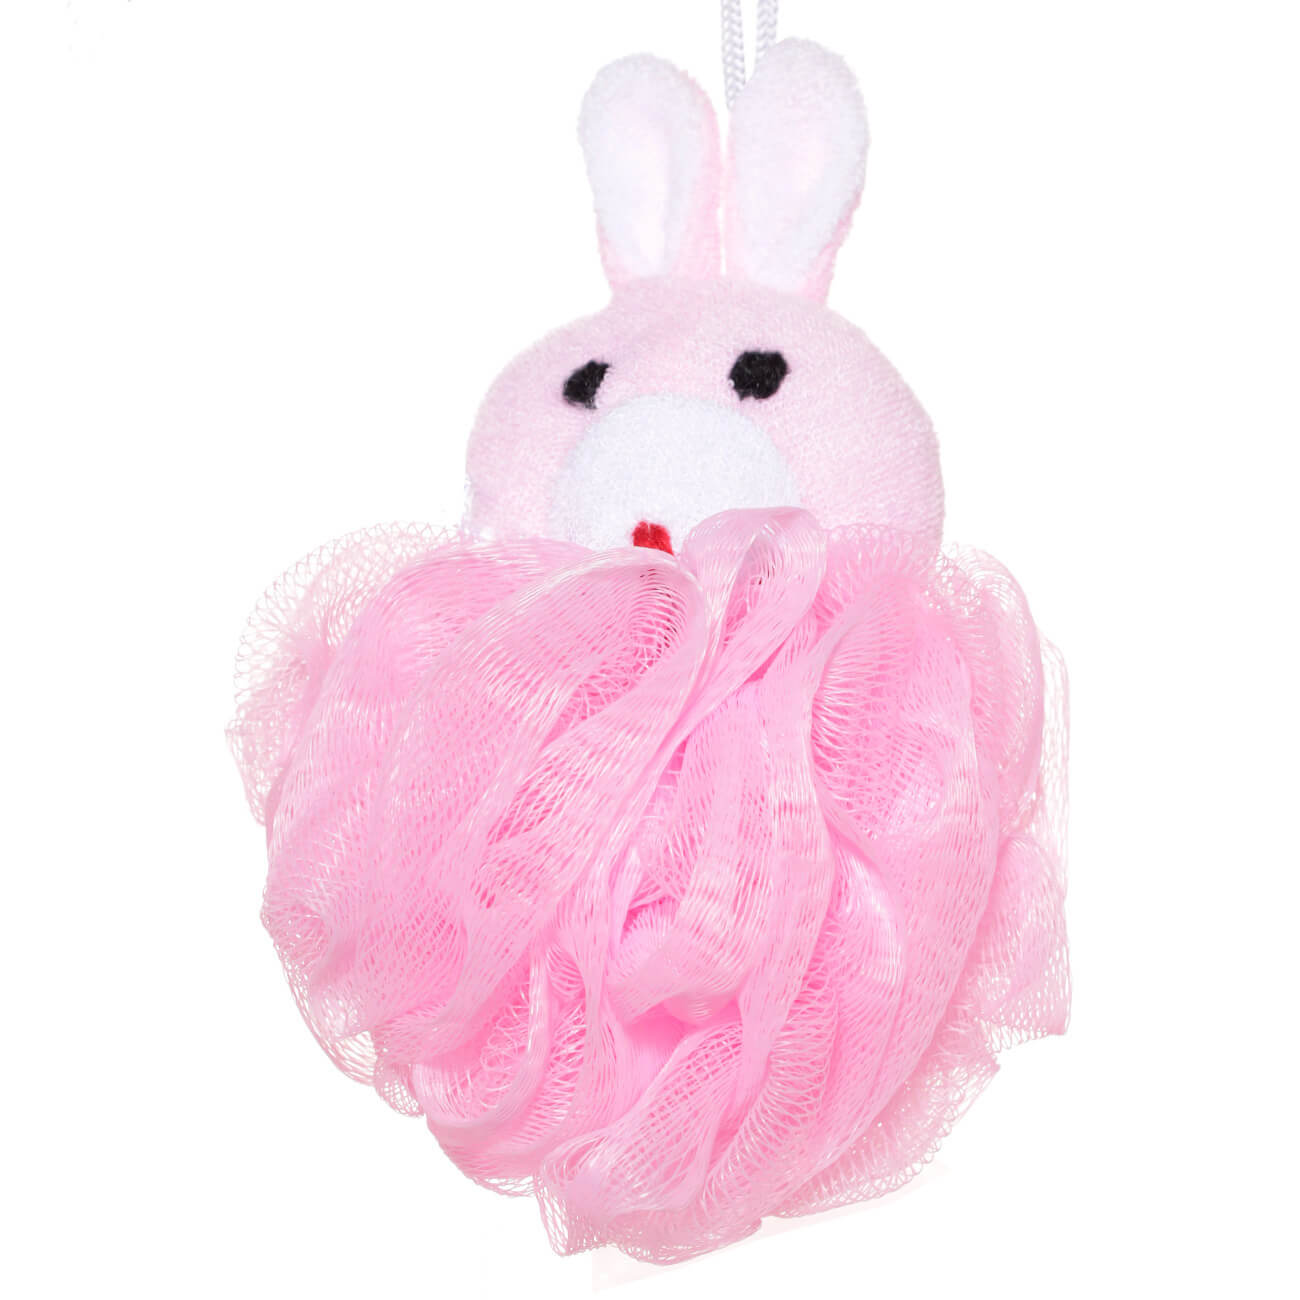 Мочалка для мытья тела, 12 см, детская, полиэтилен/полиэстер, розовая, Заяц, Rabbit мочалка детская для купания